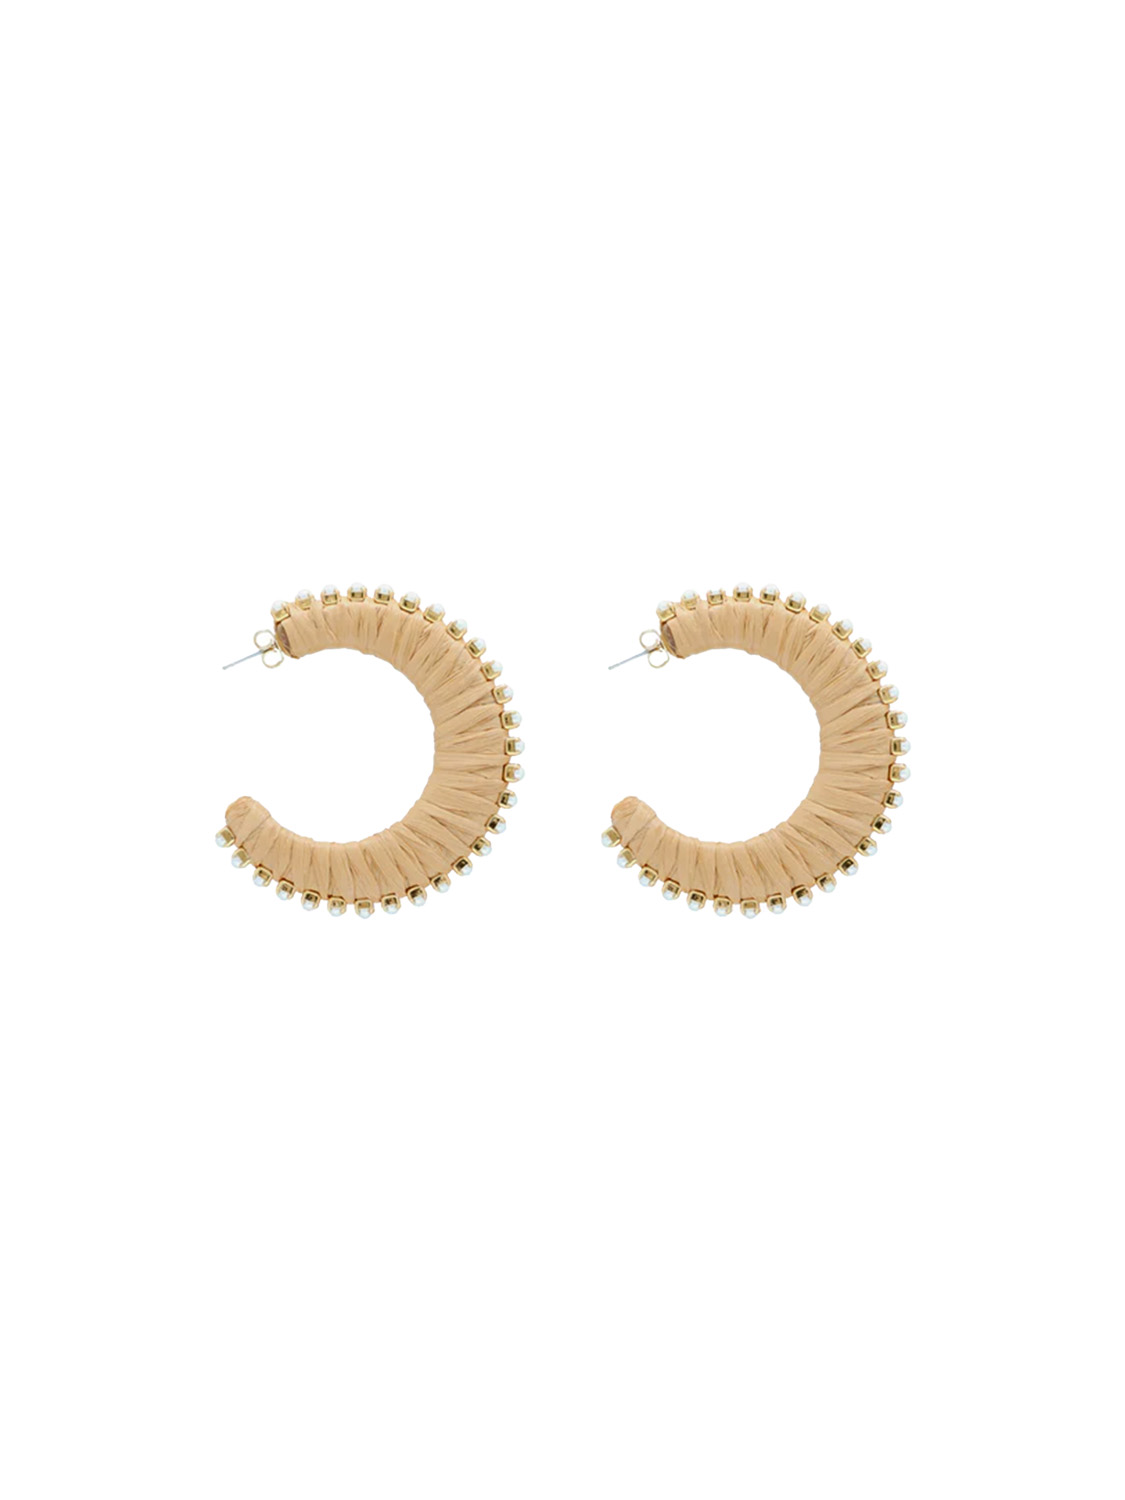 Raffia Pearl - orecchino in rafia con dettagli in perle  